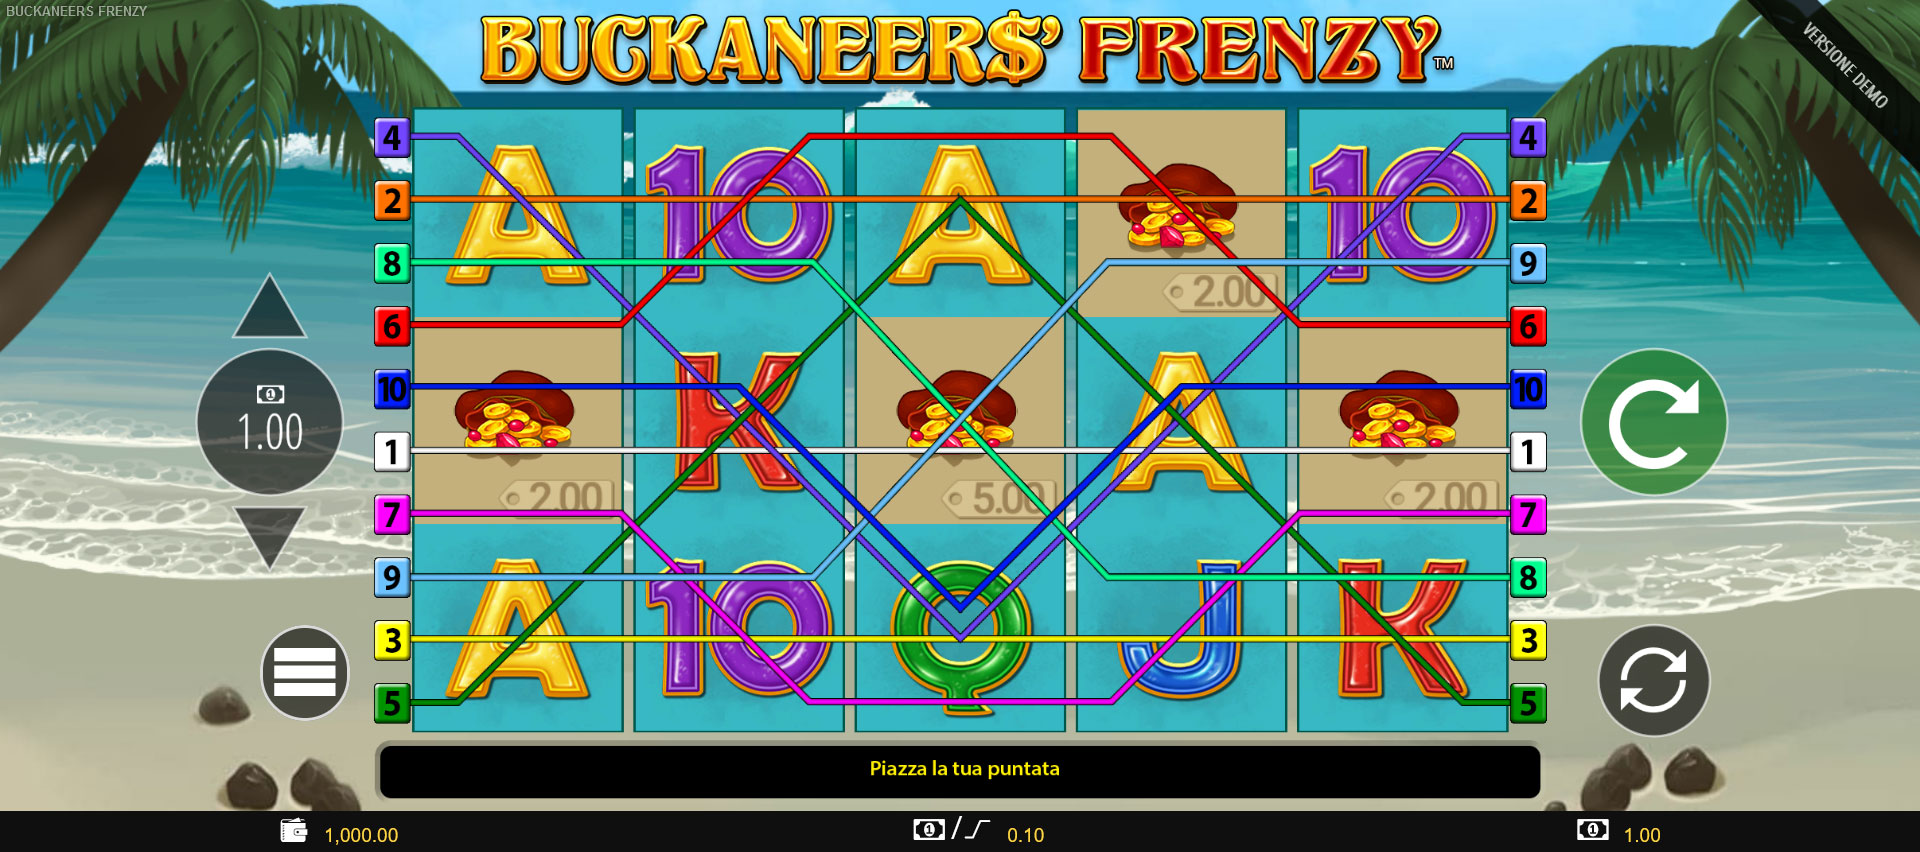 griglia di gioco della slot online buckaneers frenzy